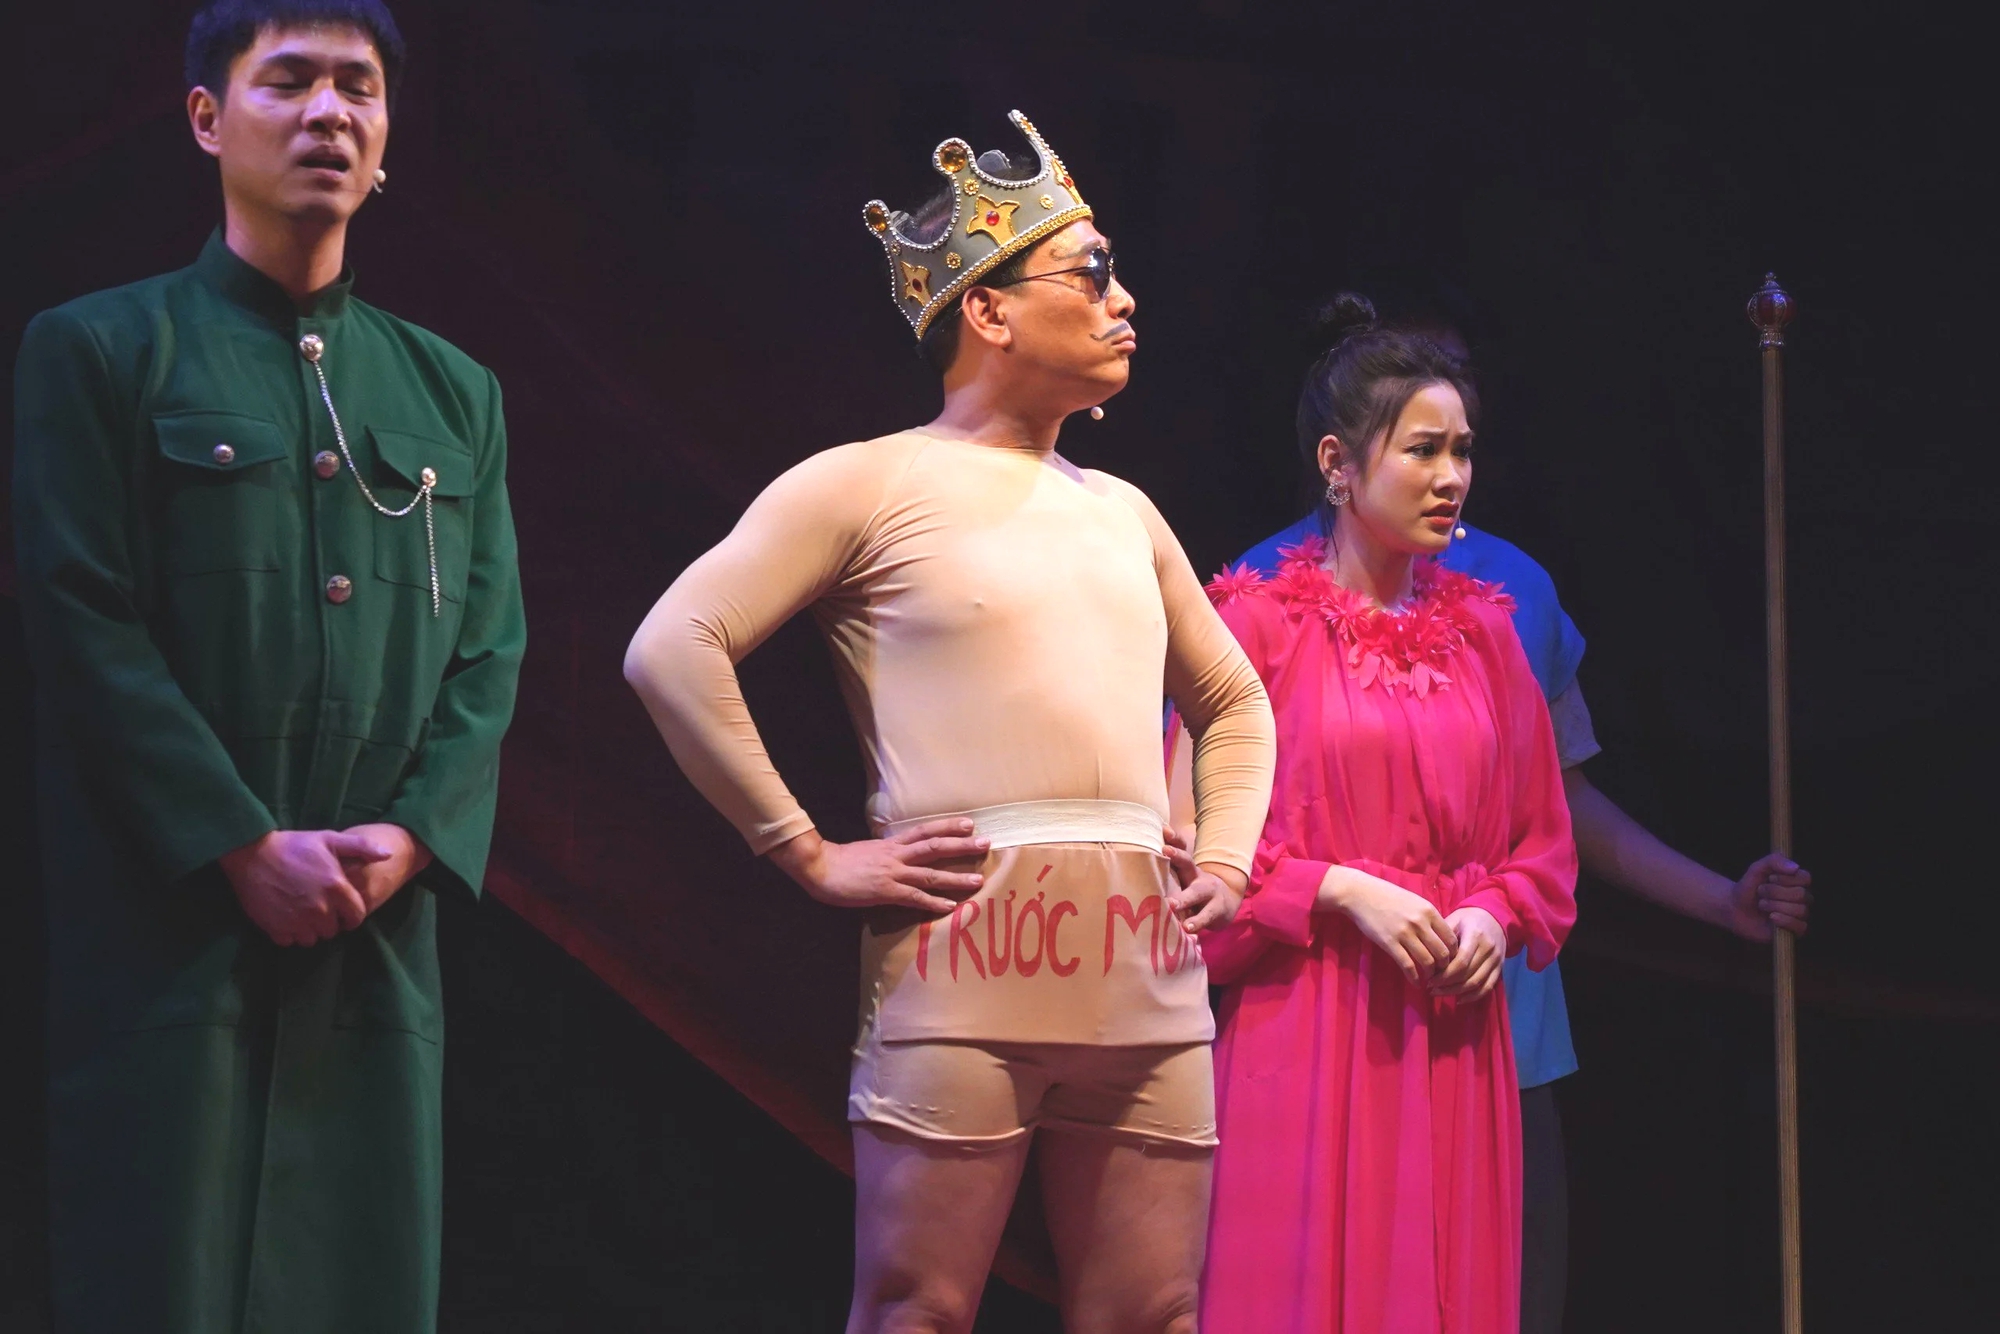 "Hoàng đế" Kiều Minh Hiếu nude trên sân khấu khiến khán giả nhí cười nắc nẻ- Ảnh 2.